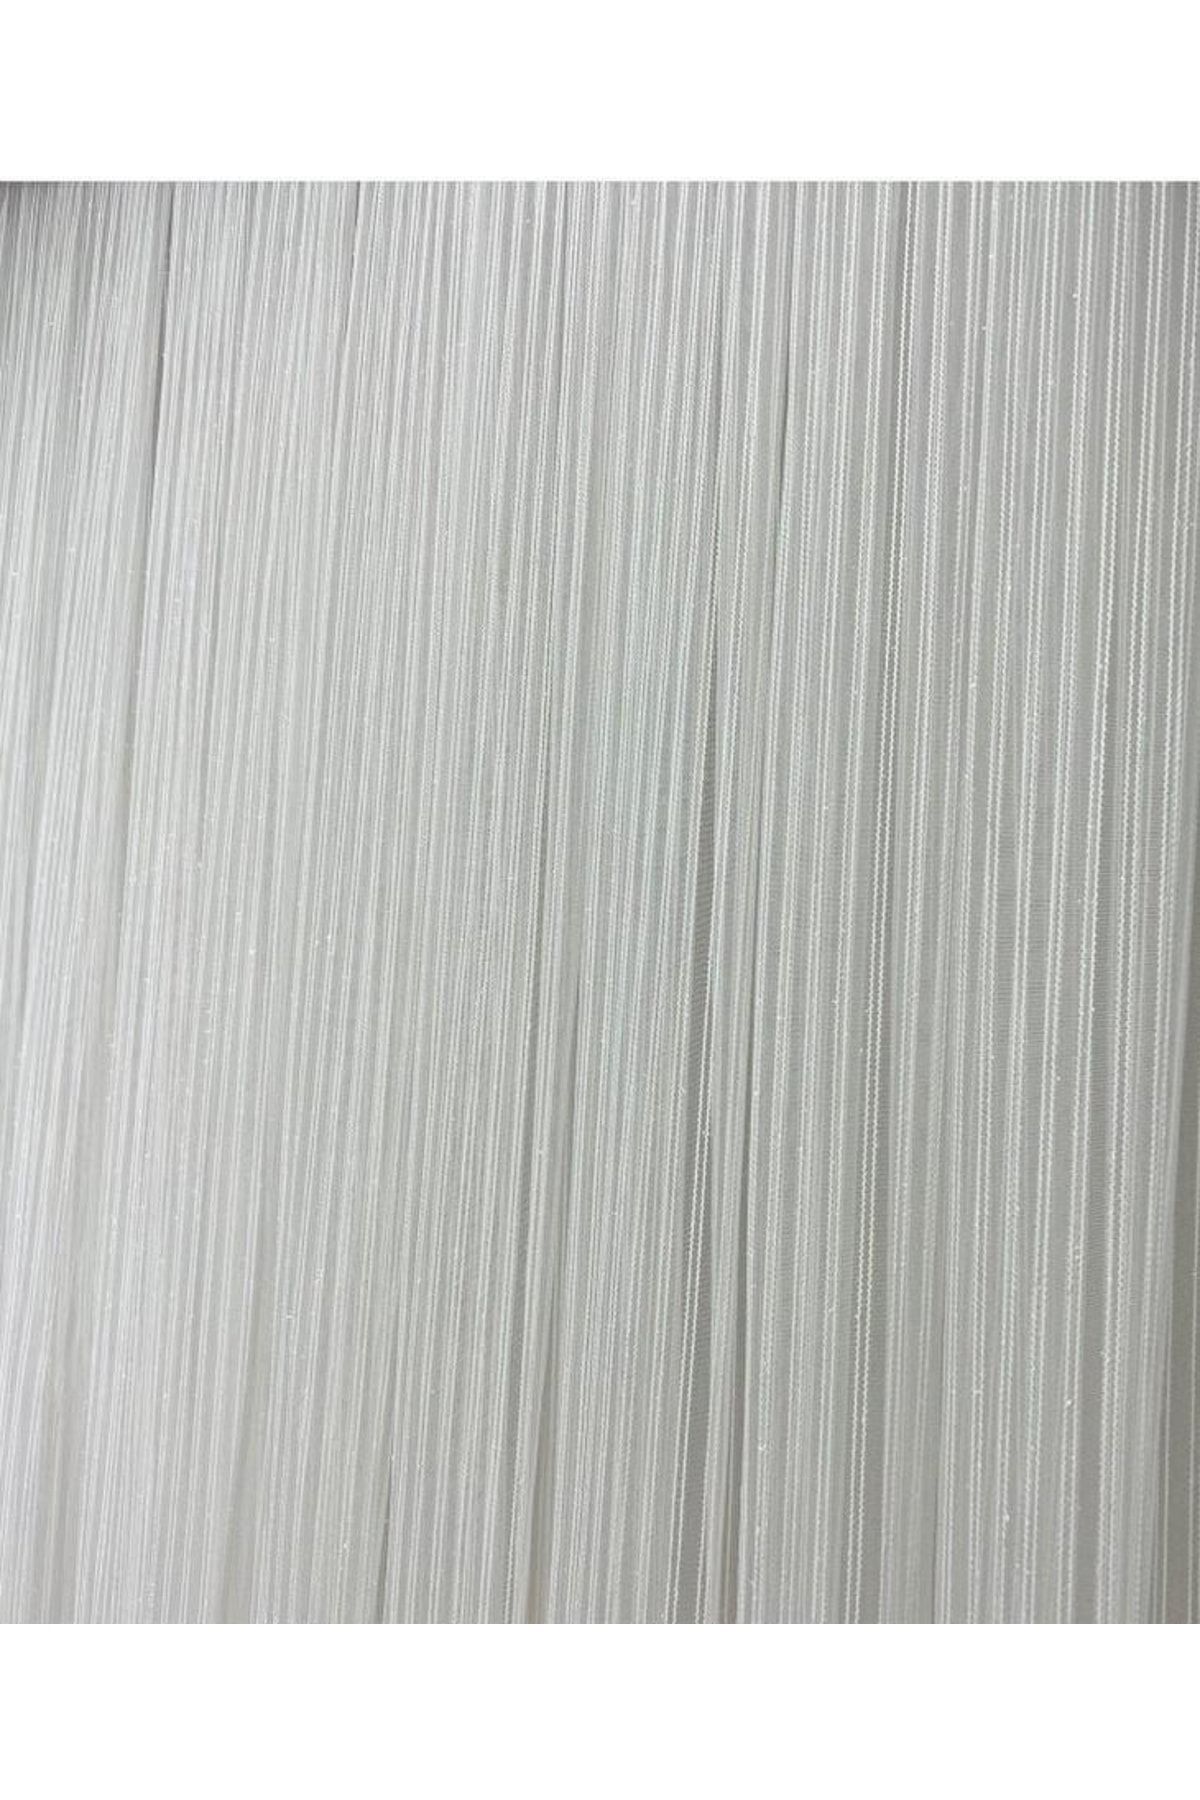 AKÇA TEKSTİL Makarna Model Simli Kırık Beyaz Renk Hazır Dikilmiş Pileli Tül Perde 300*260